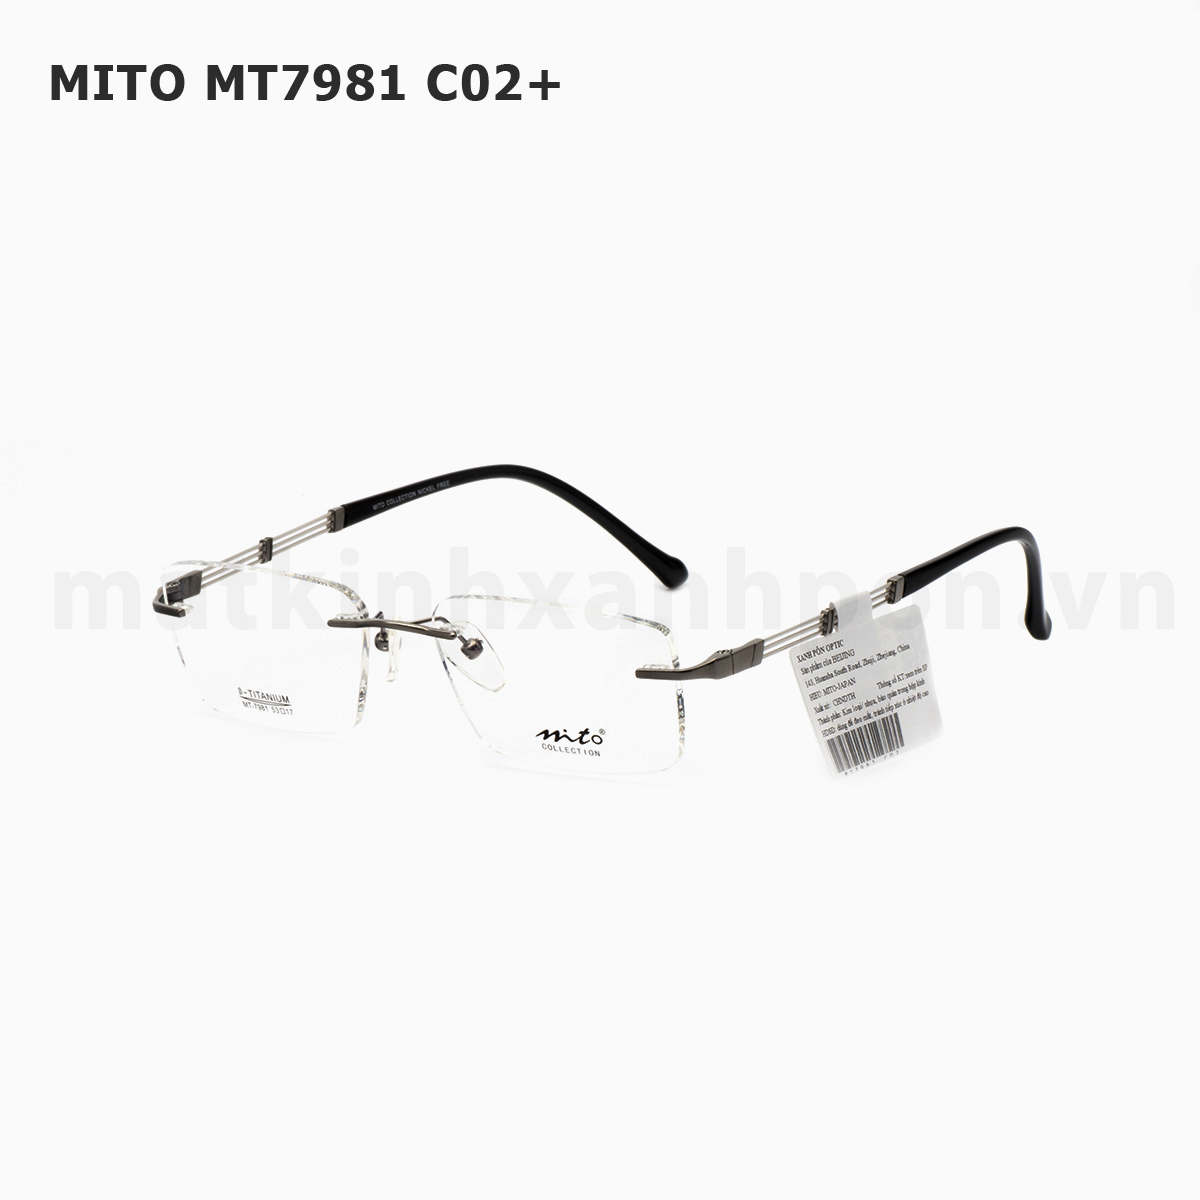 Mito MT7981 C02